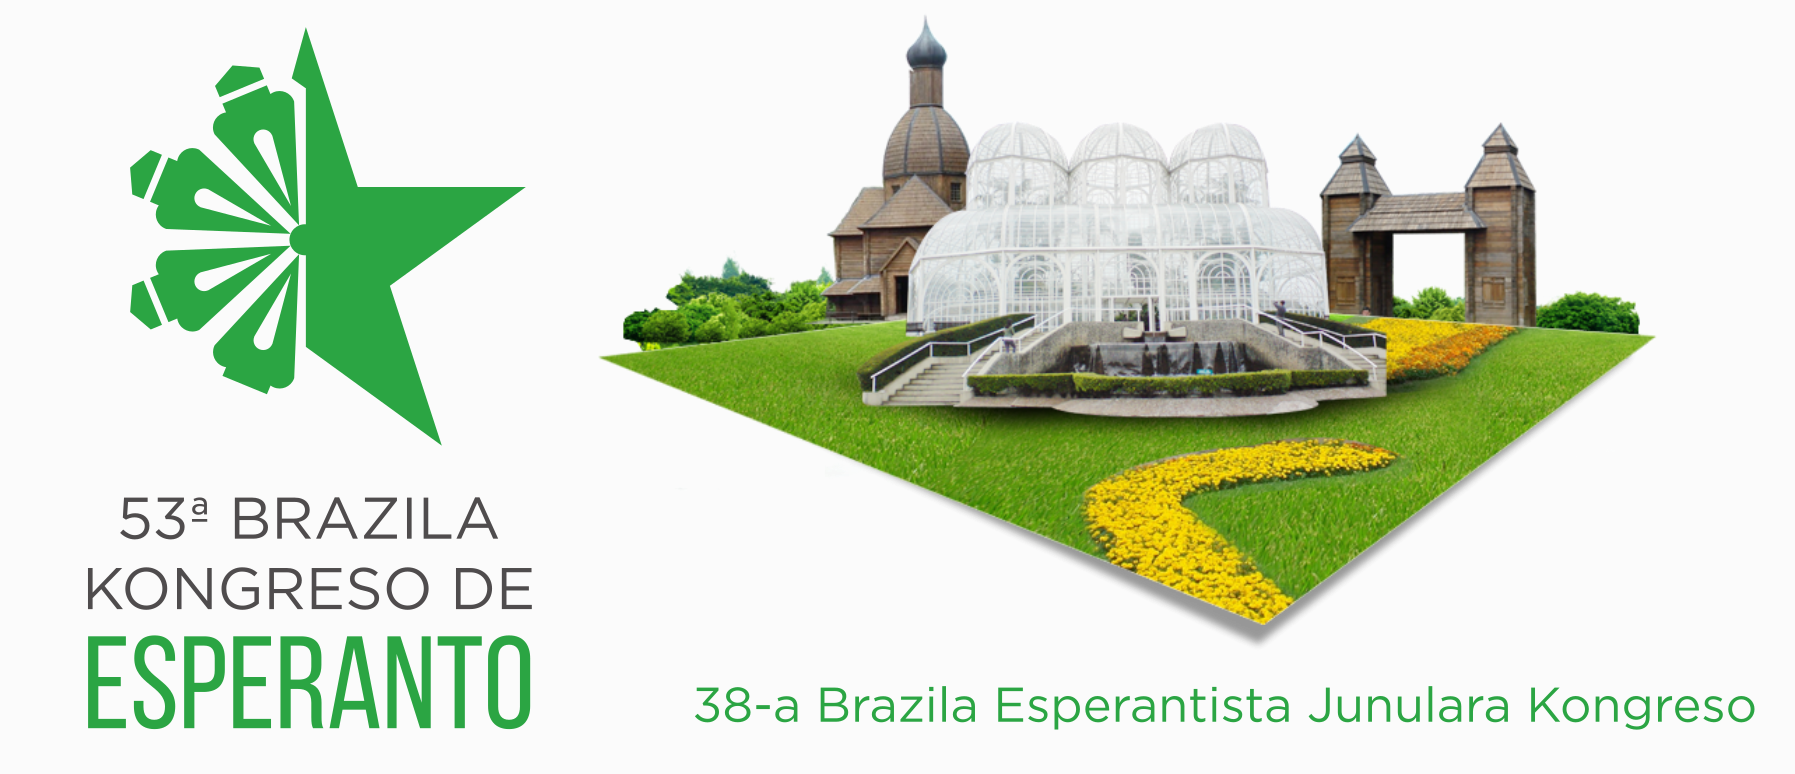 53º Congresso Brasileiro de Esperanto